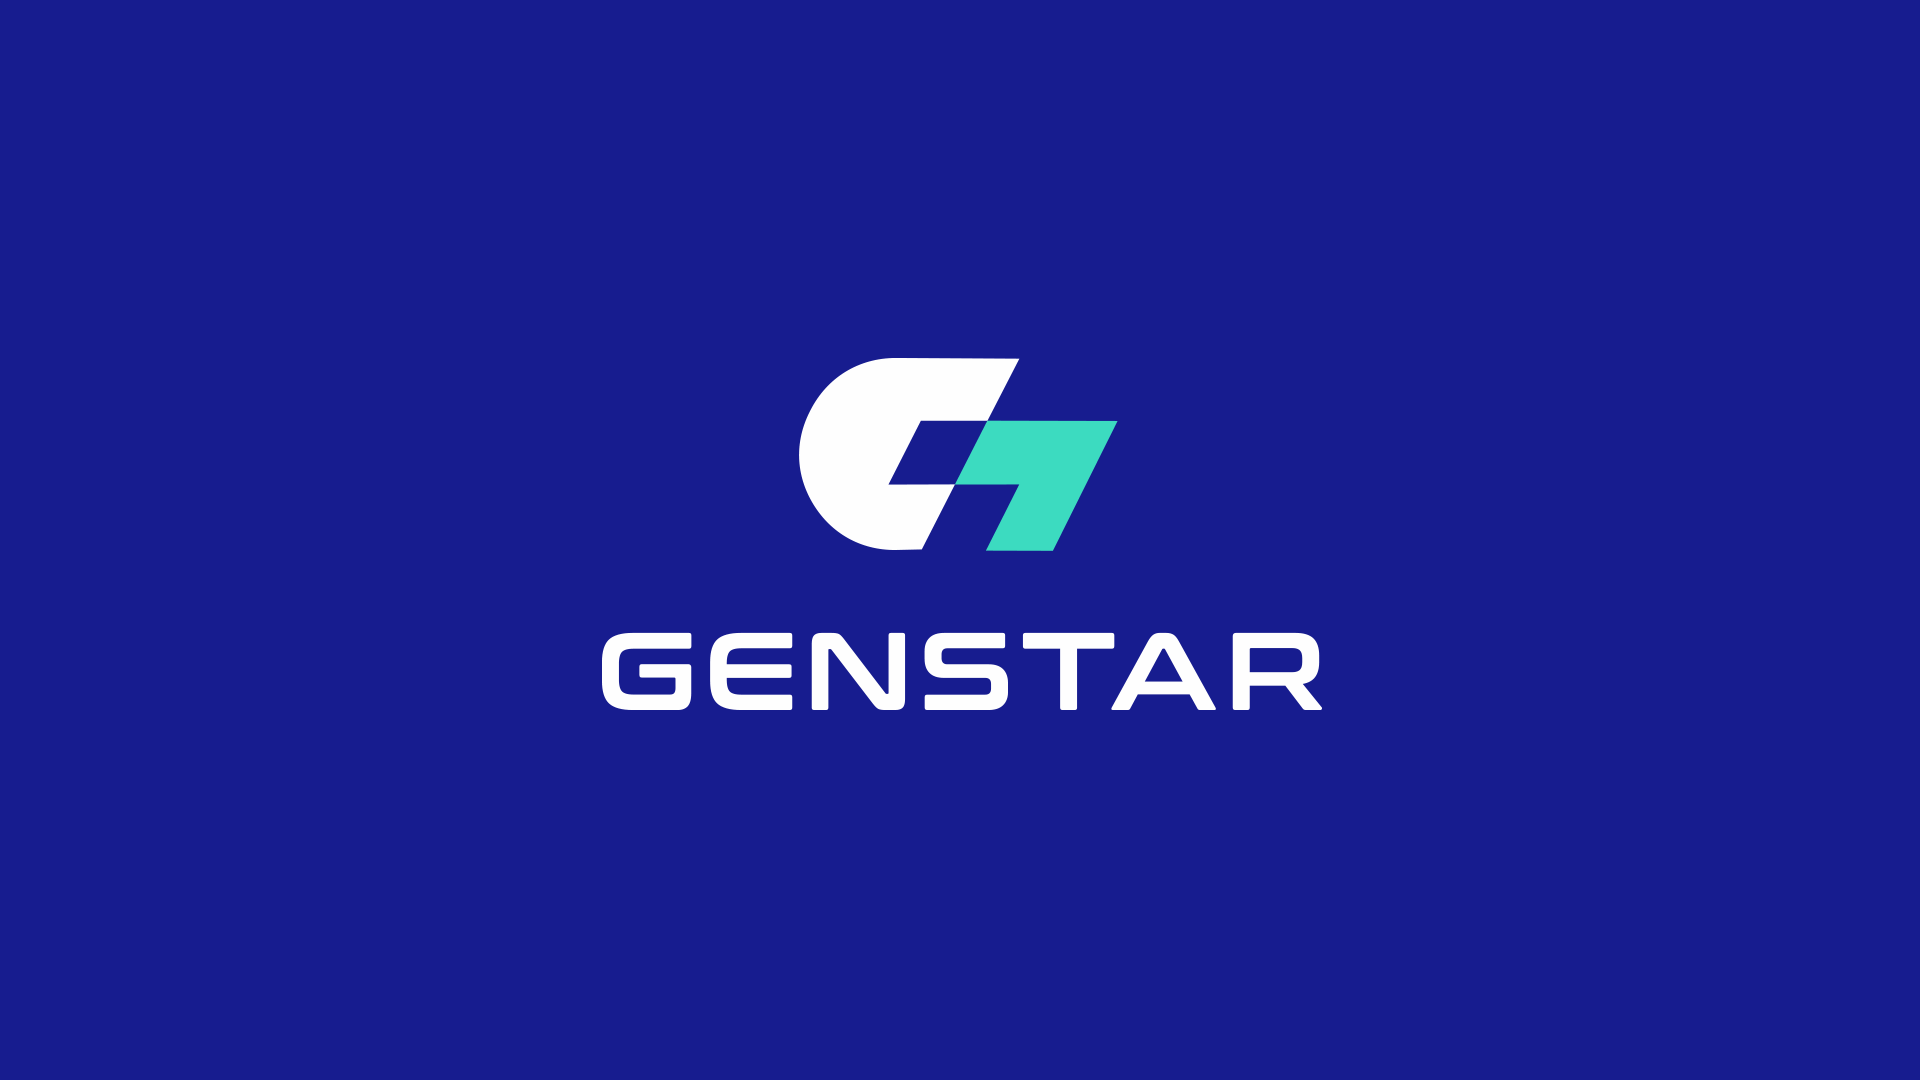 Фото №5: CТО Genstar - Разработка логотипа и создание бренда в студии брендинга Rocketmen Agency